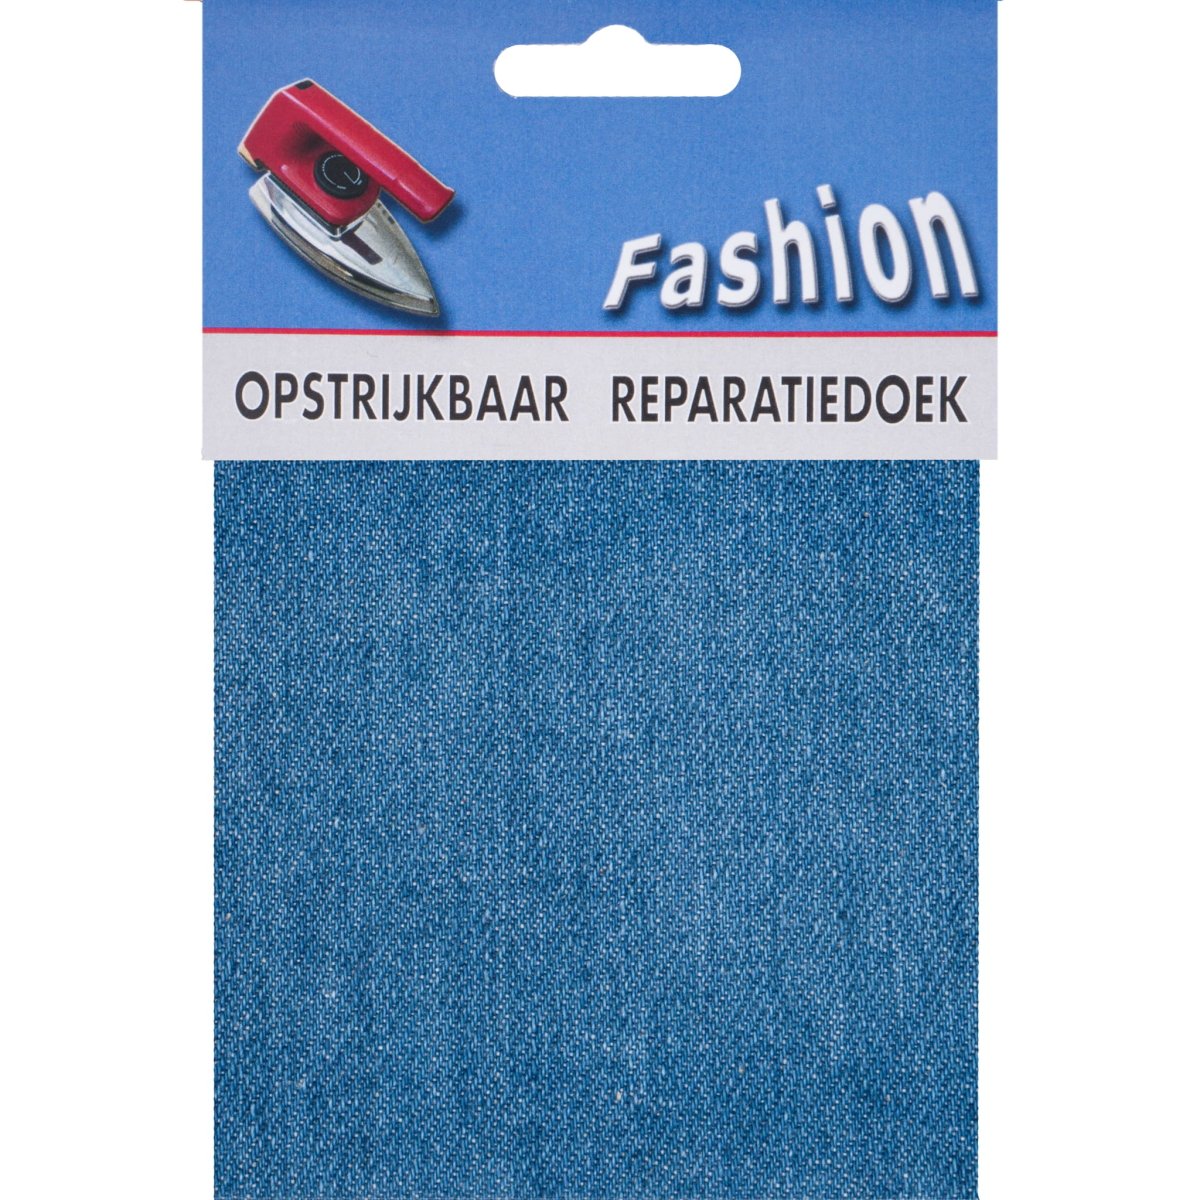 Reparatiedoek Jeans Fashion opstrijkbaar stevig 10x40cm Repraratiedoek RPD117404 - Fourniturenkraam.nl